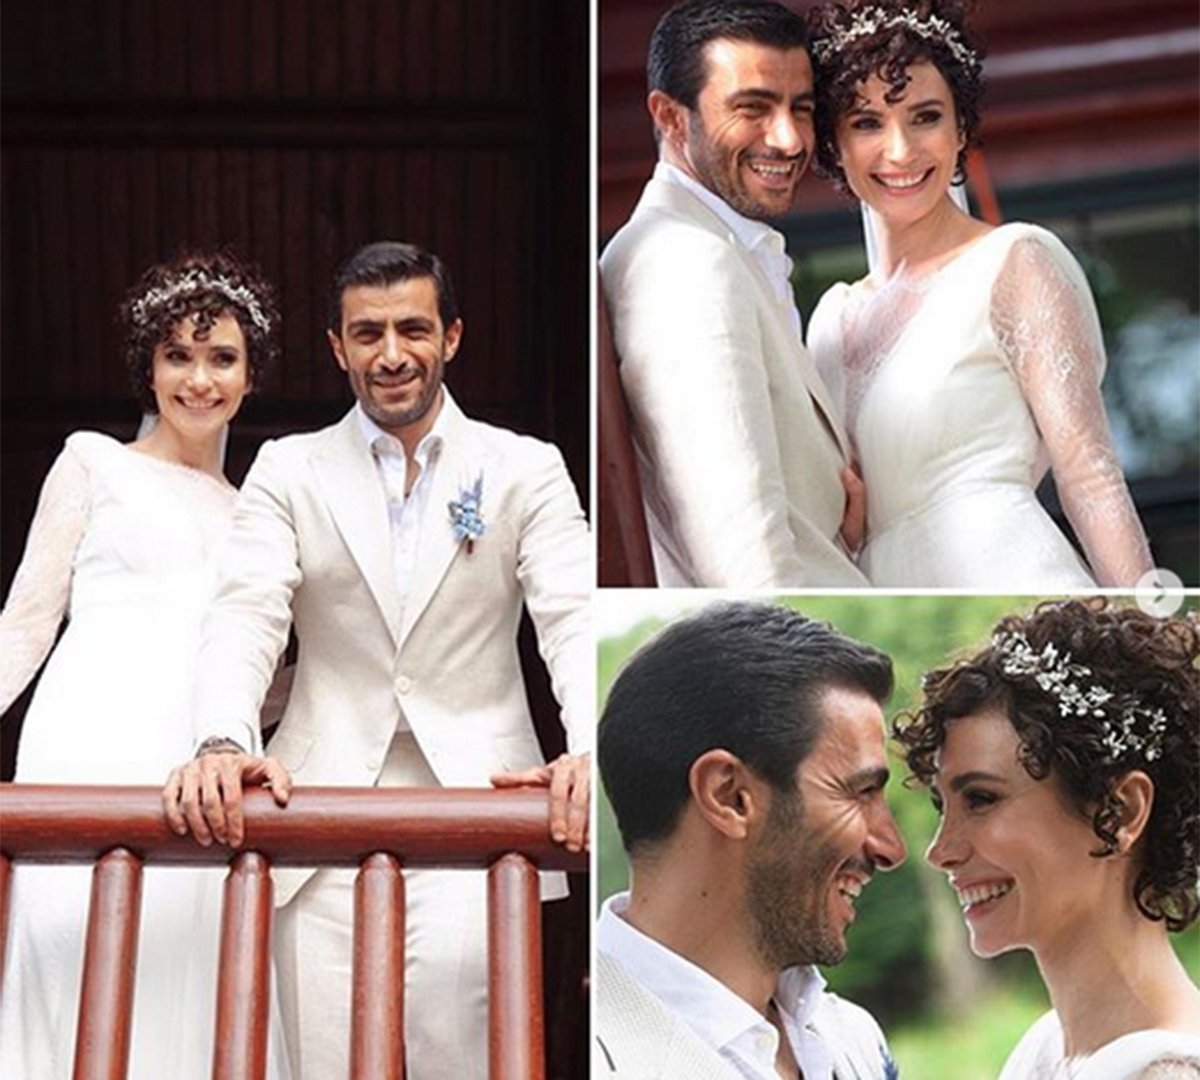 Թուրք դերասանուհին ամուսնացել է հայ գործարարի հետ